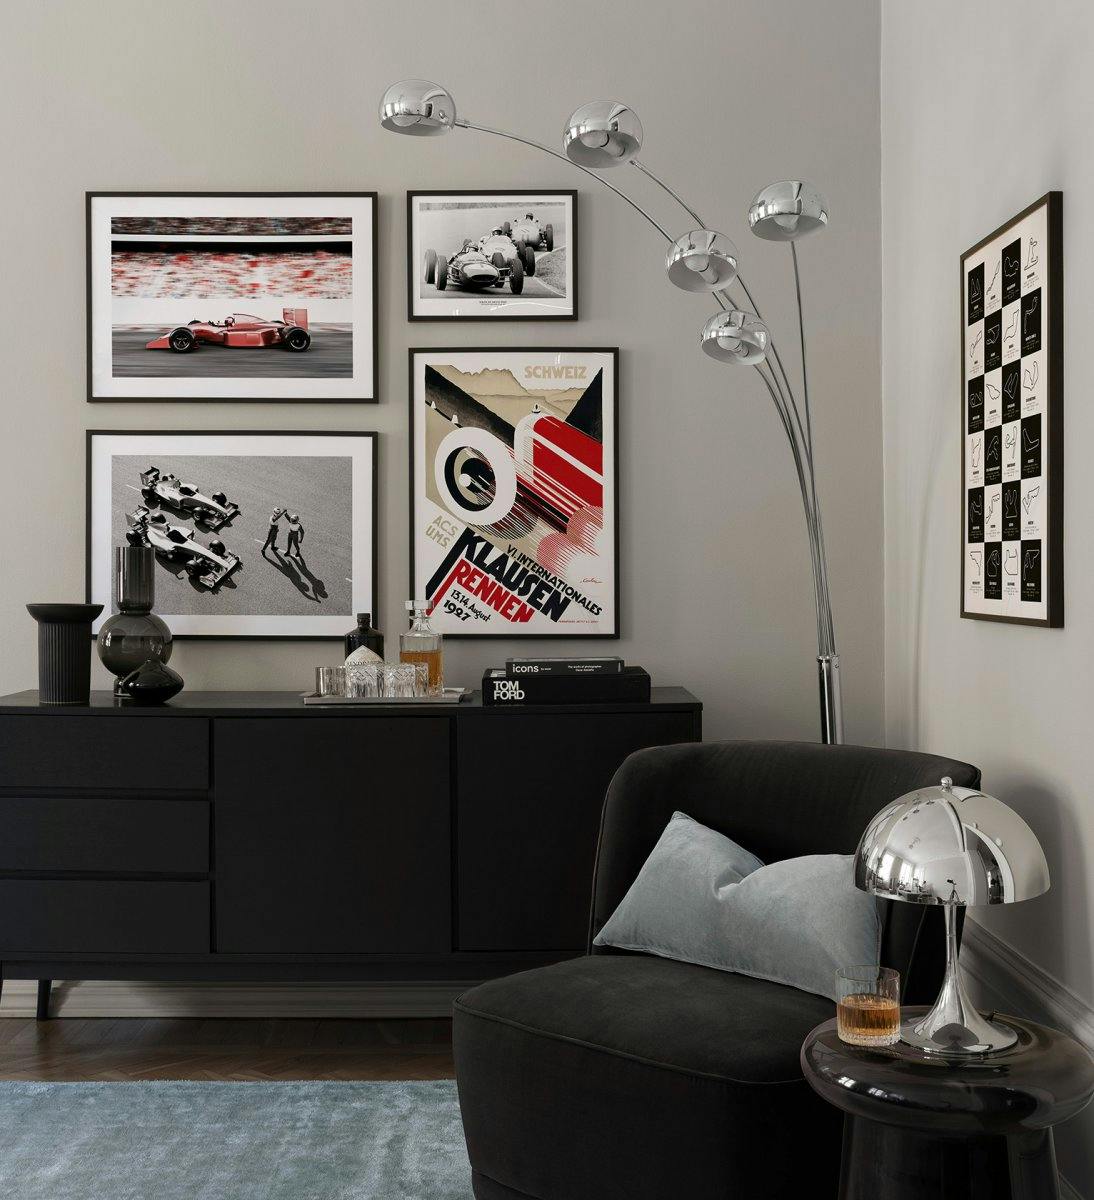 Galleria a parete di vetture da corsa con fotografie e illustrazioni di vetture di Formula 1 con cornici in legno nero per il so